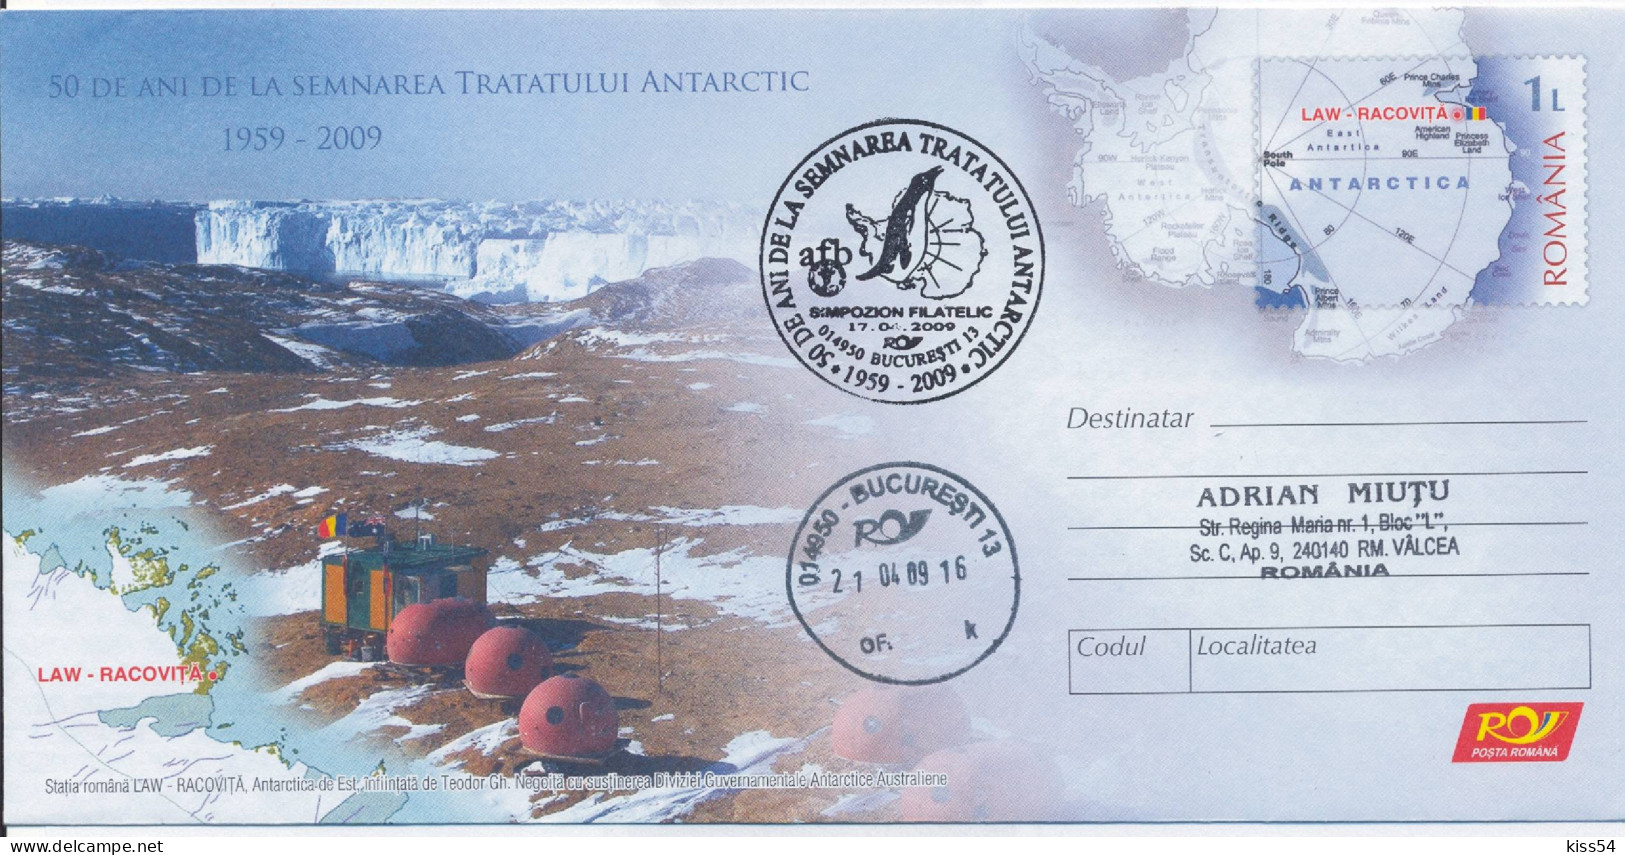 IP 2009 - 03a Antarctic Treaty - Stationery, Special Cancellation - Used - 2009 - Antarctic Treaty